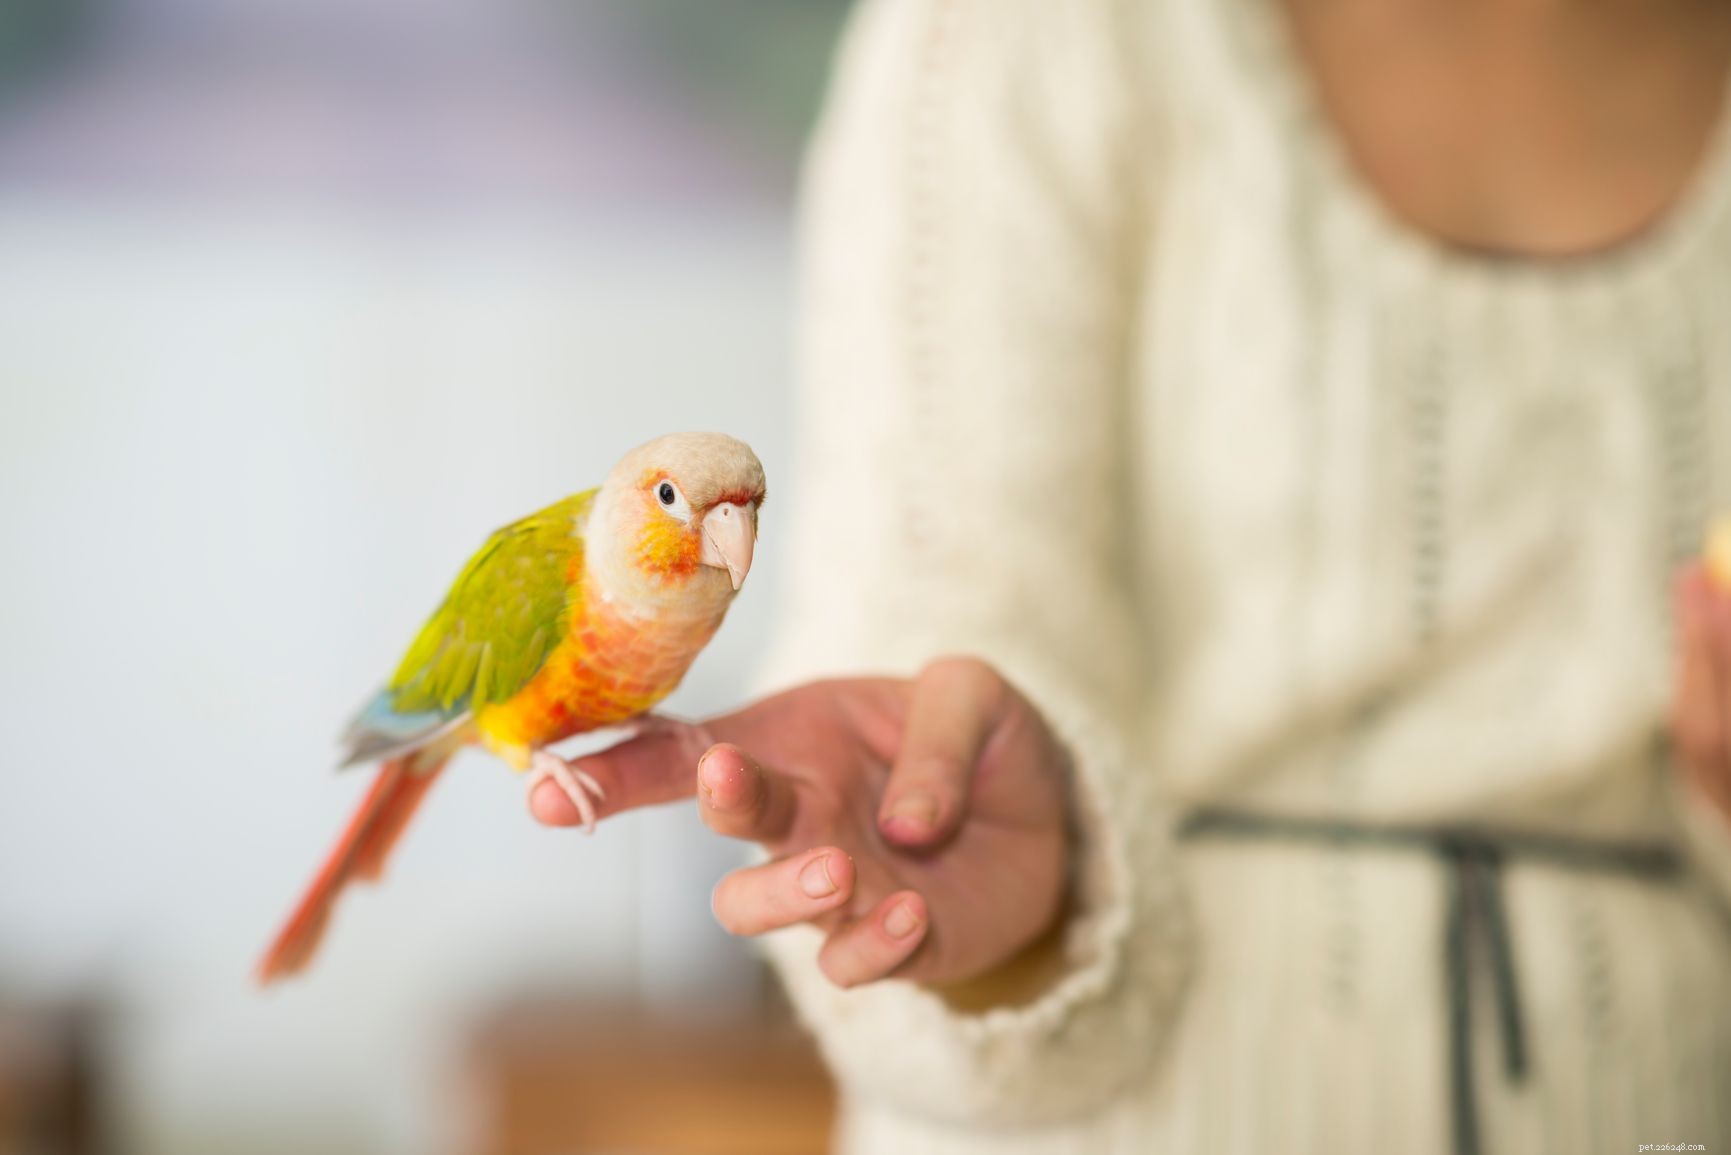 Прикольные трюки, которым можно научить свою домашнюю птицу